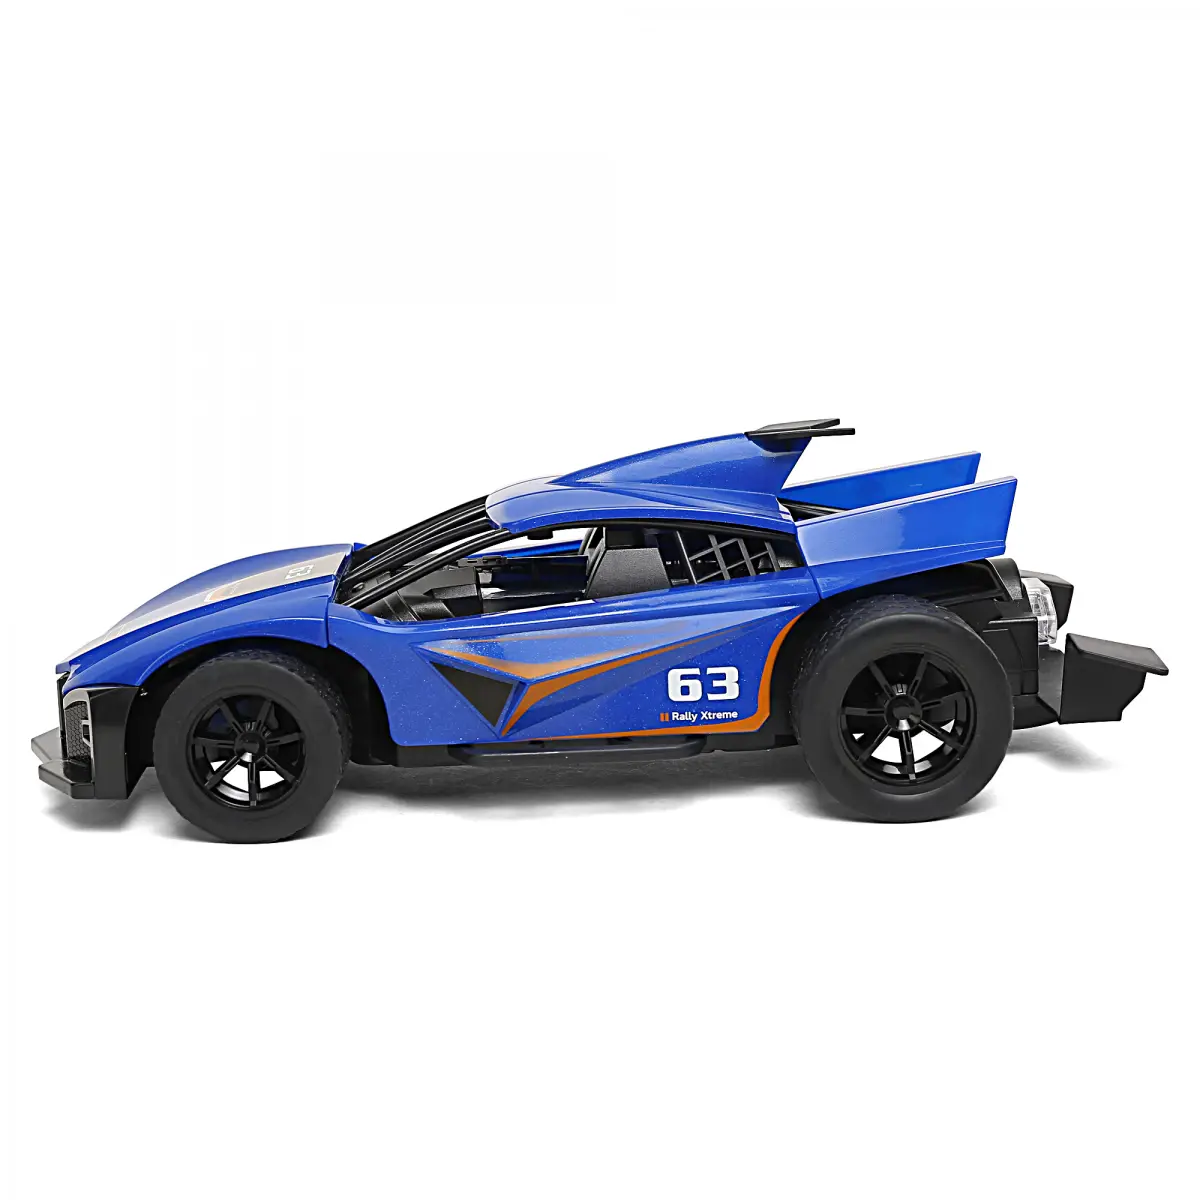 Ralleyz Vapour Spray Racing Remote Control Car, 6Y+, Blue 